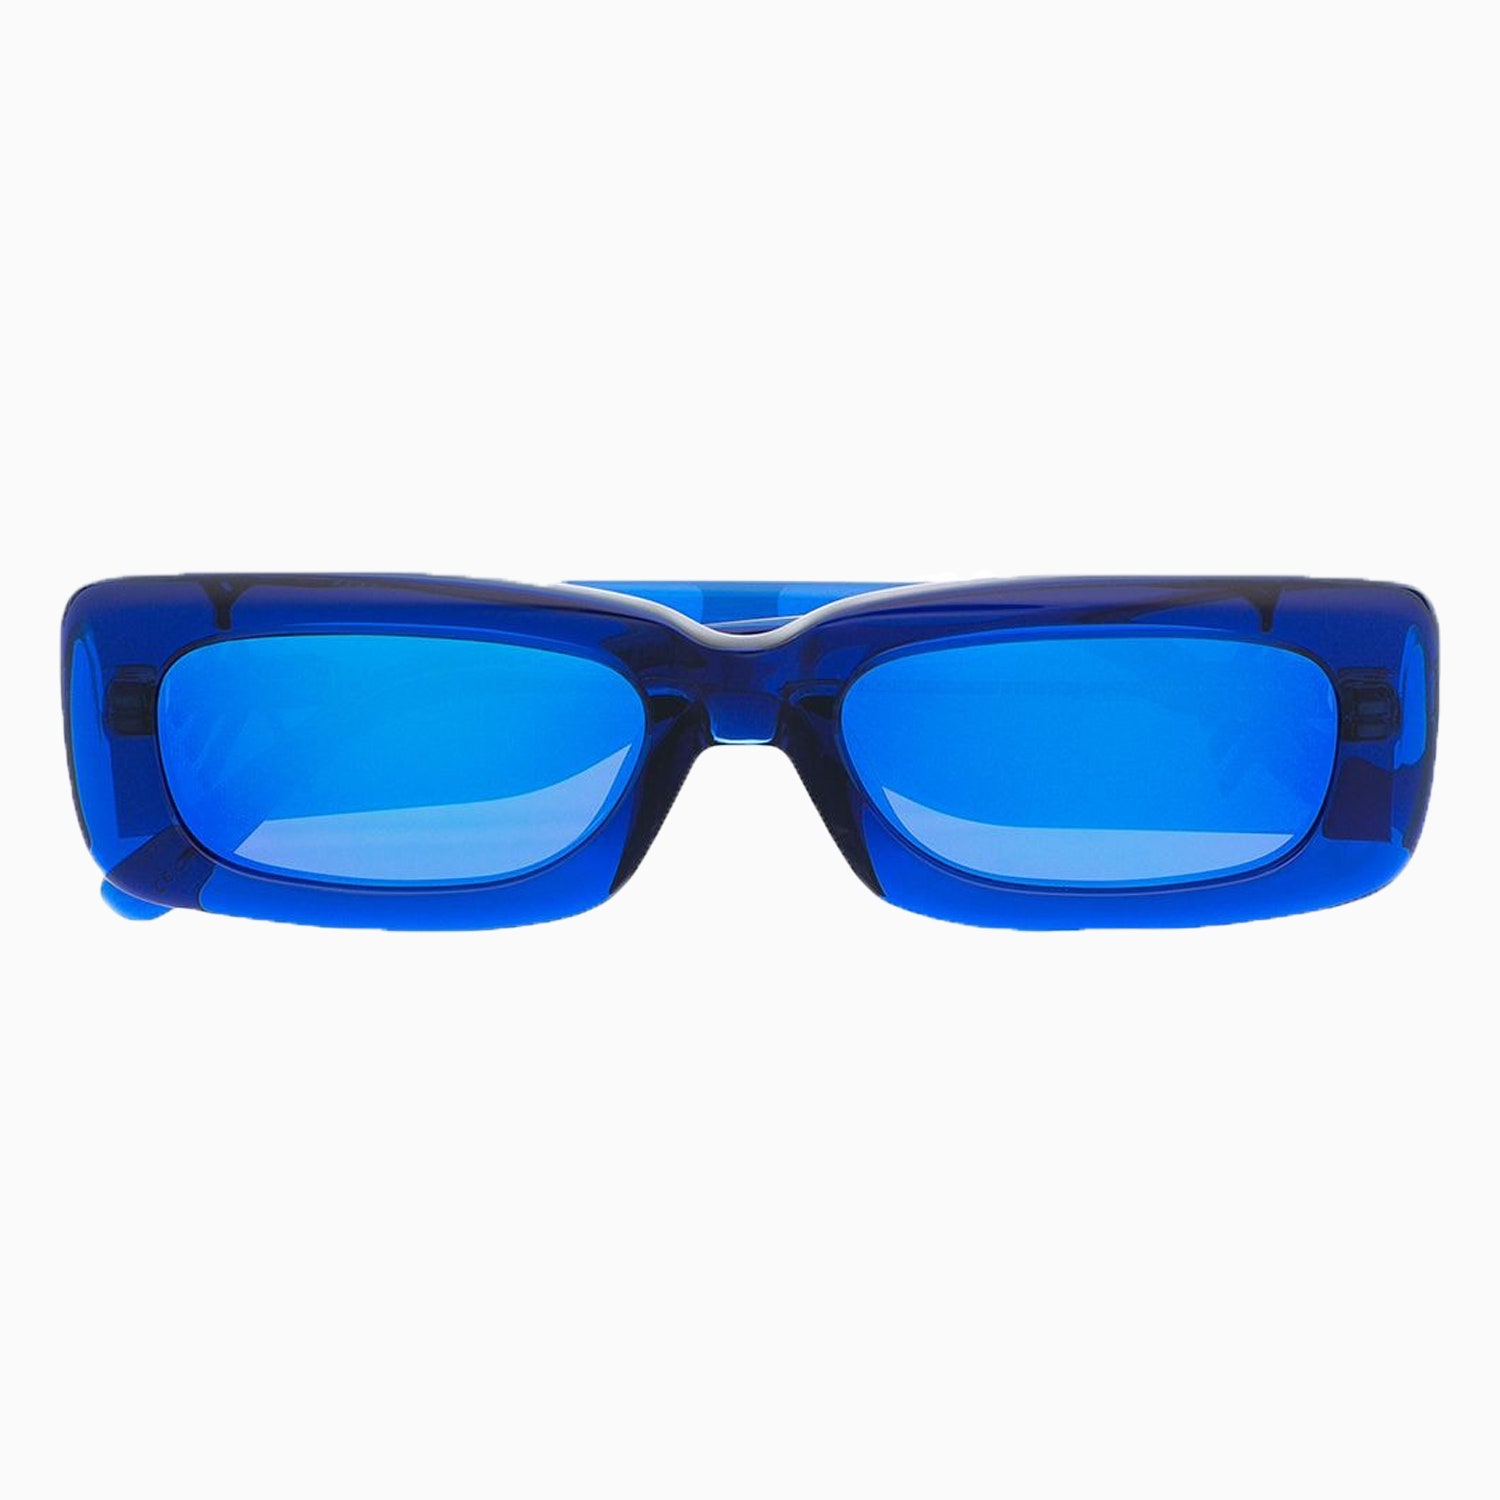 Солнцезащитные очки Linda Farrow 15004 рубля farfetch.com